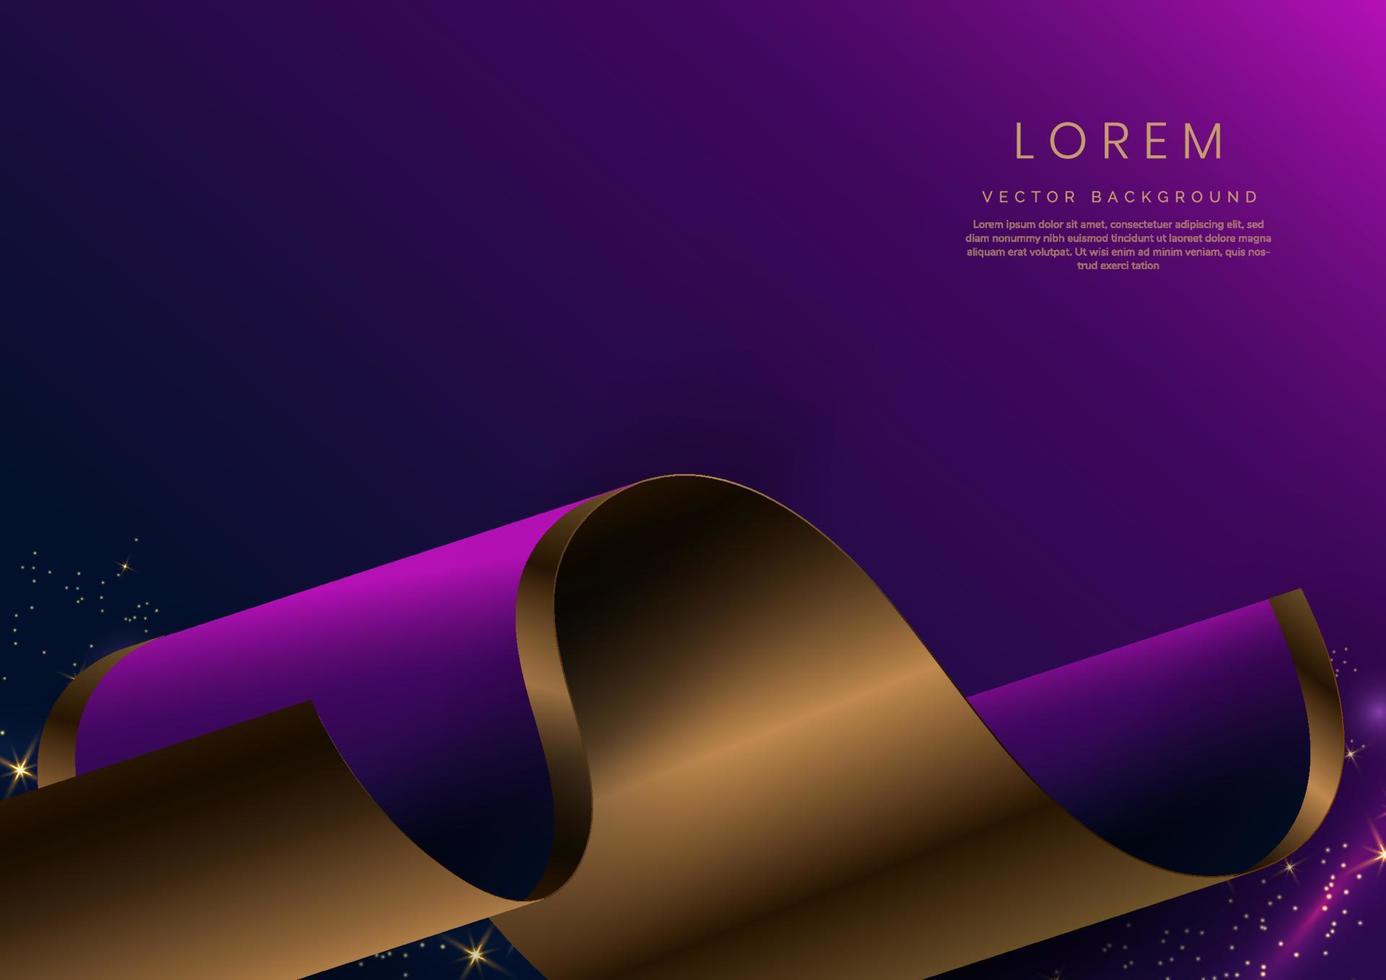 fita curva de ouro 3d abstrata em fundo roxo e azul escuro com efeito de iluminação e brilho com espaço de cópia para texto. estilo de design de luxo. vetor